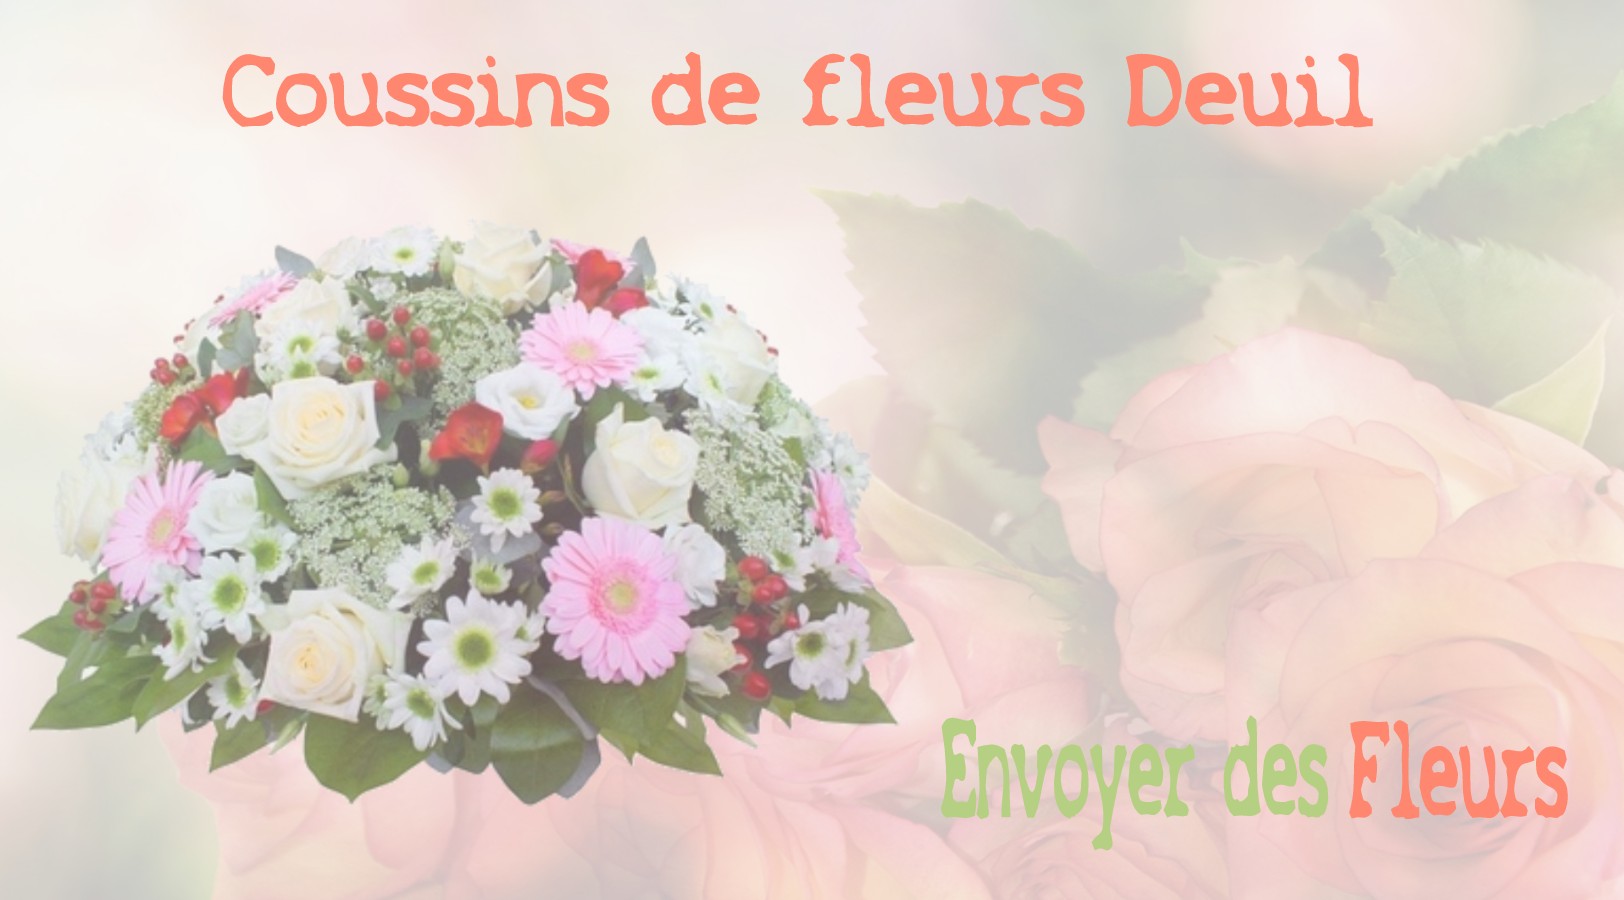 Les coussins de fleurs deuil - LIVRAISON FLEURS DEUIL A DANNEMARIE 78